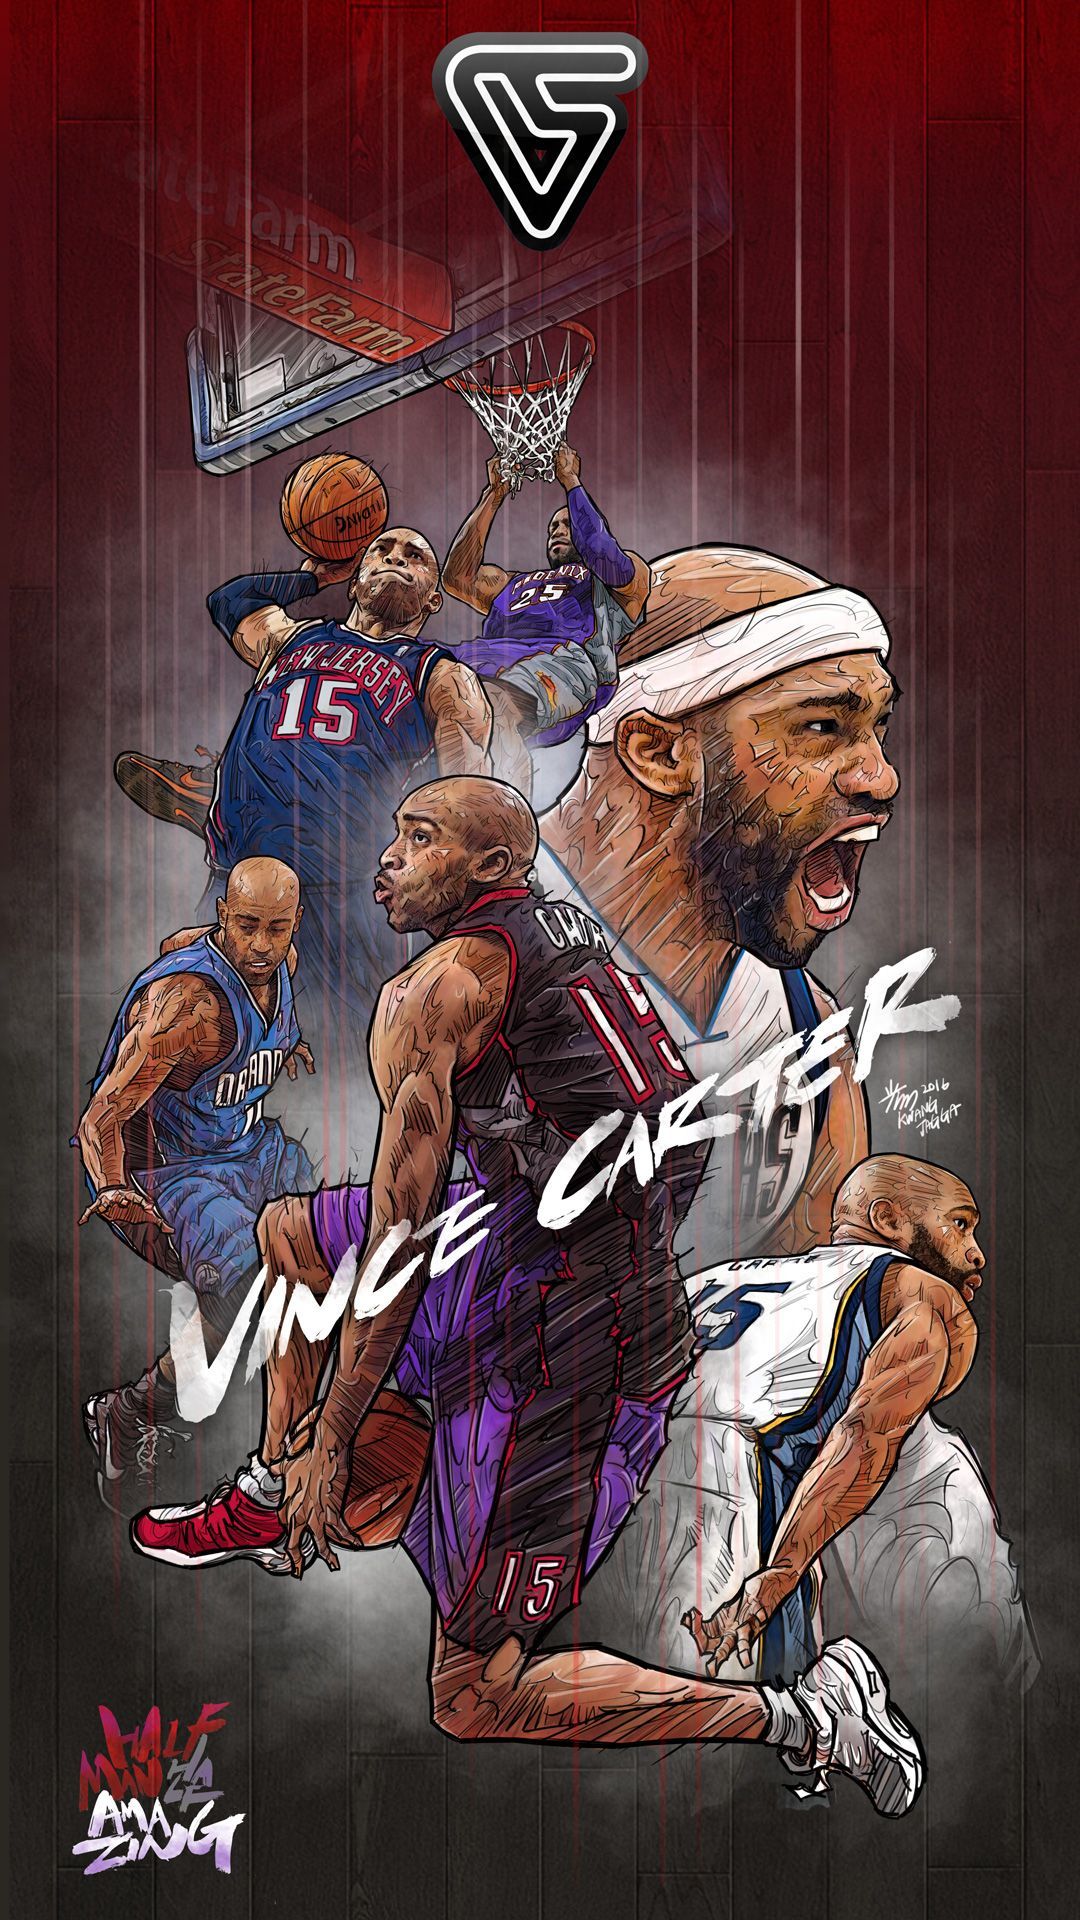 Vince Carter Forever Illustration. Nba wallpaper, Nba basketball art, Basketball art